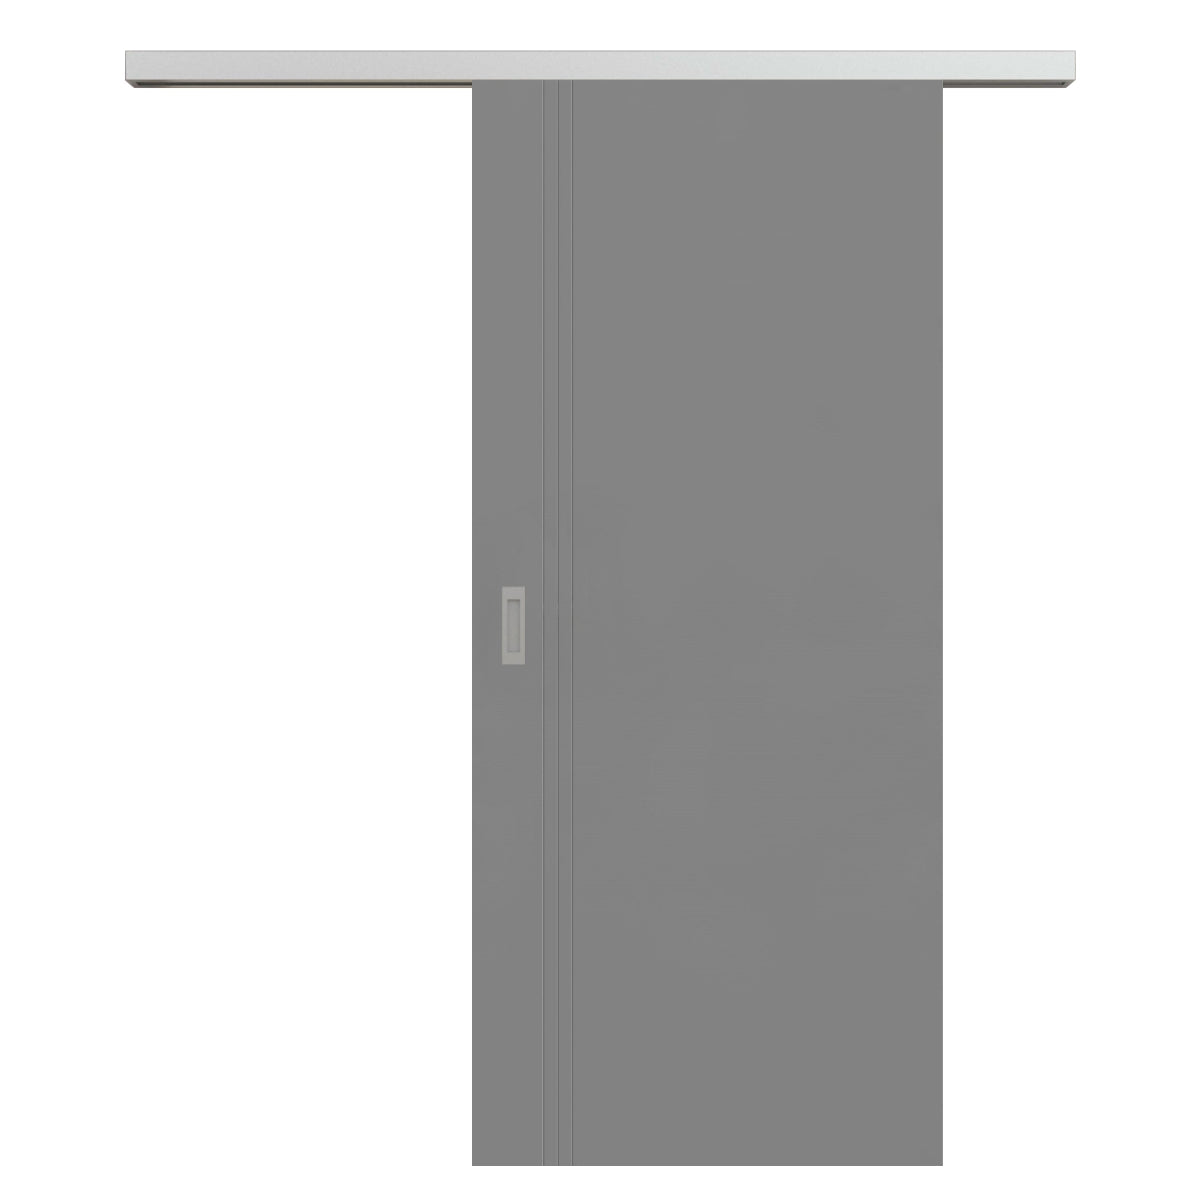 Schiebetür für Set mit Edelstahllaufkasten grau 3 Rillen aufrecht Schlosseite - Modell Designtür VS37